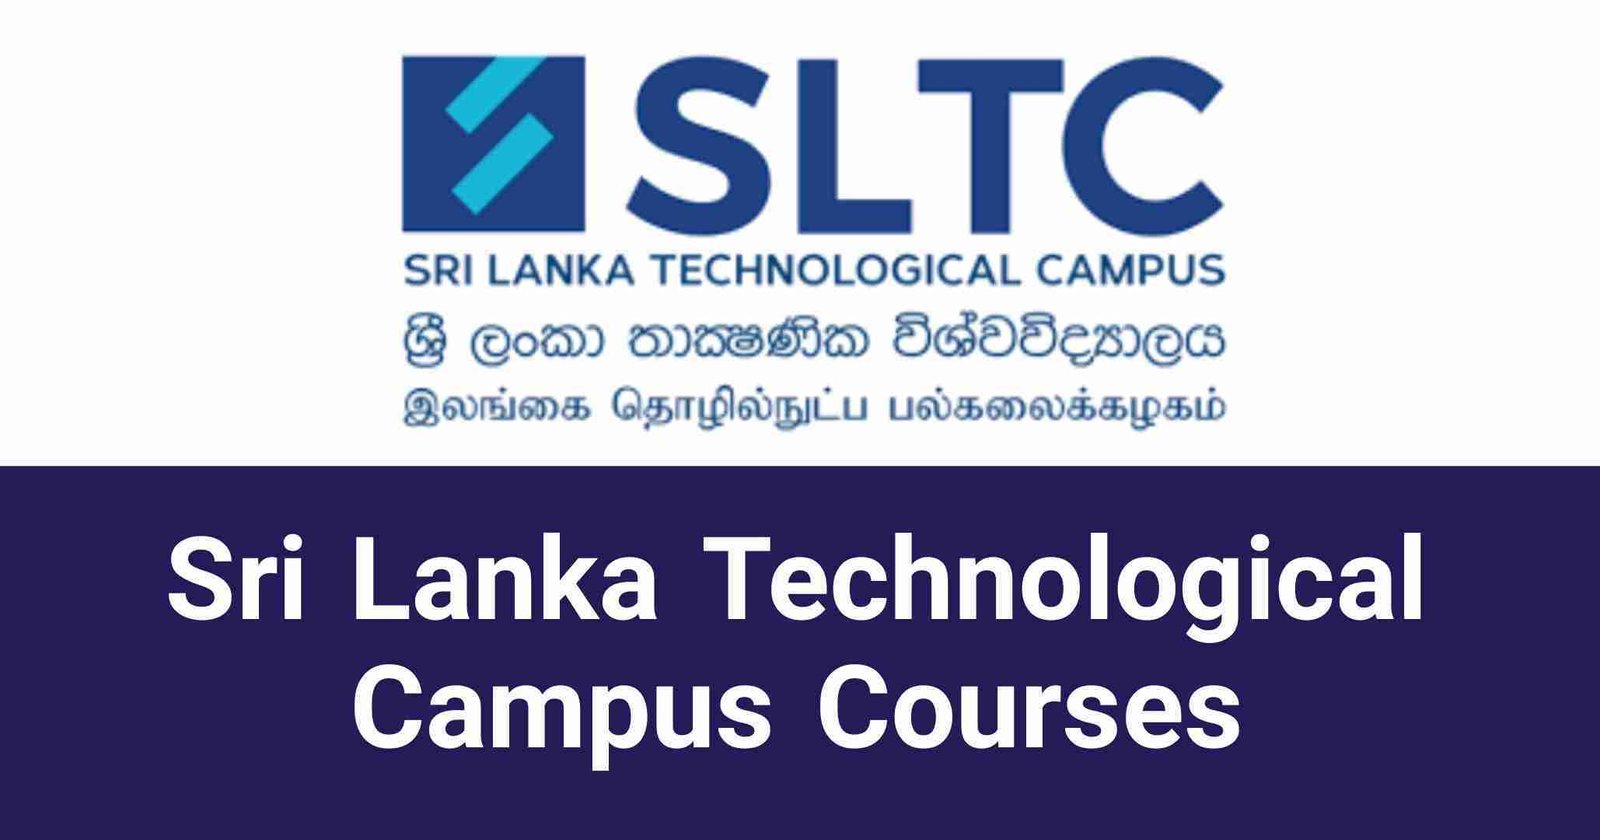 Sri Lanka Technological Campus Courses